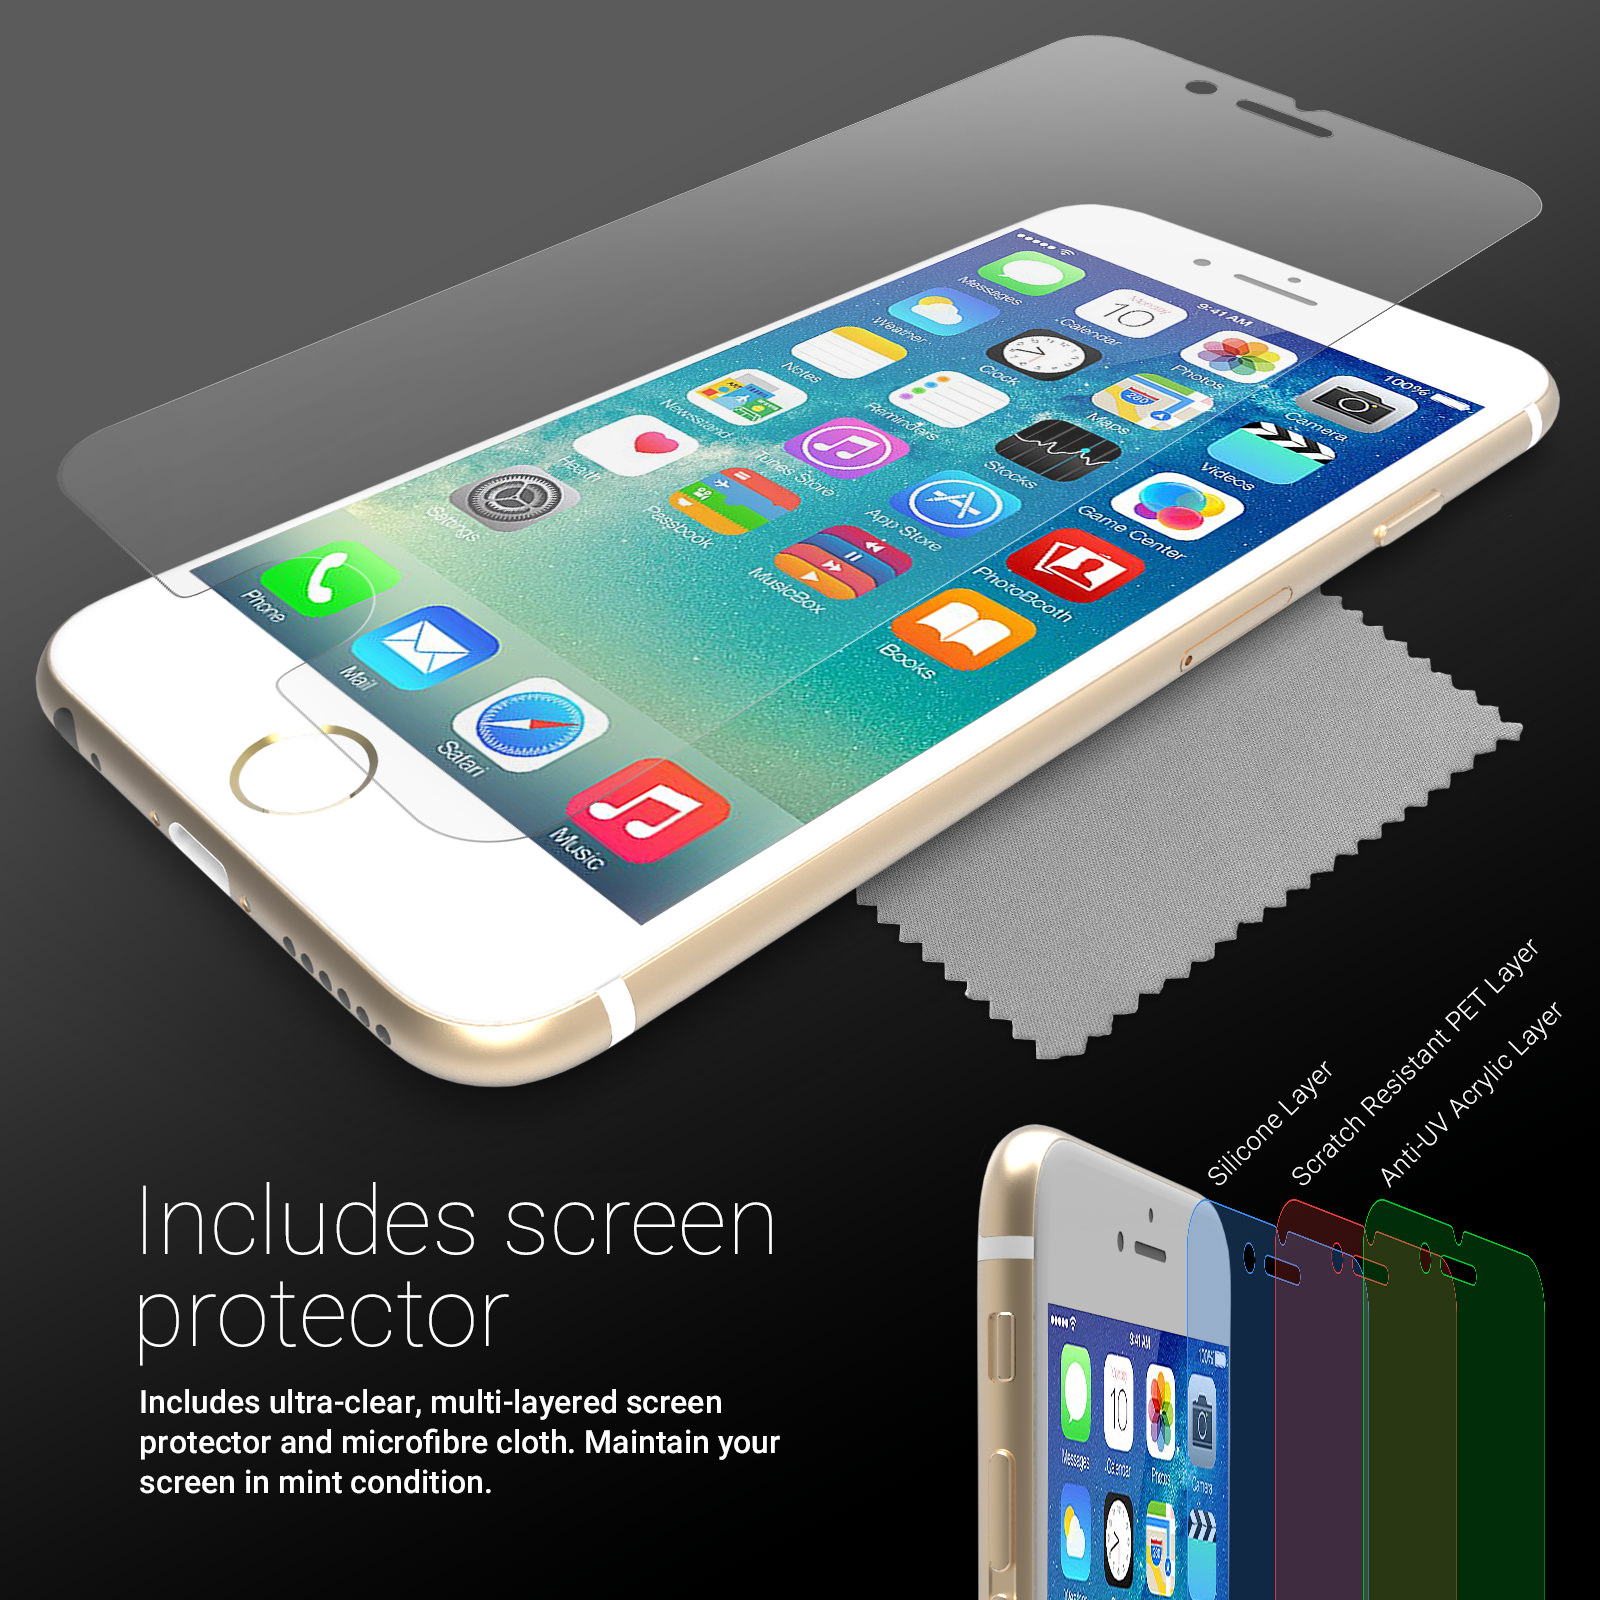 Caseflex iPhone 6 / 6s Reinforced TPU Gel Case - Clear